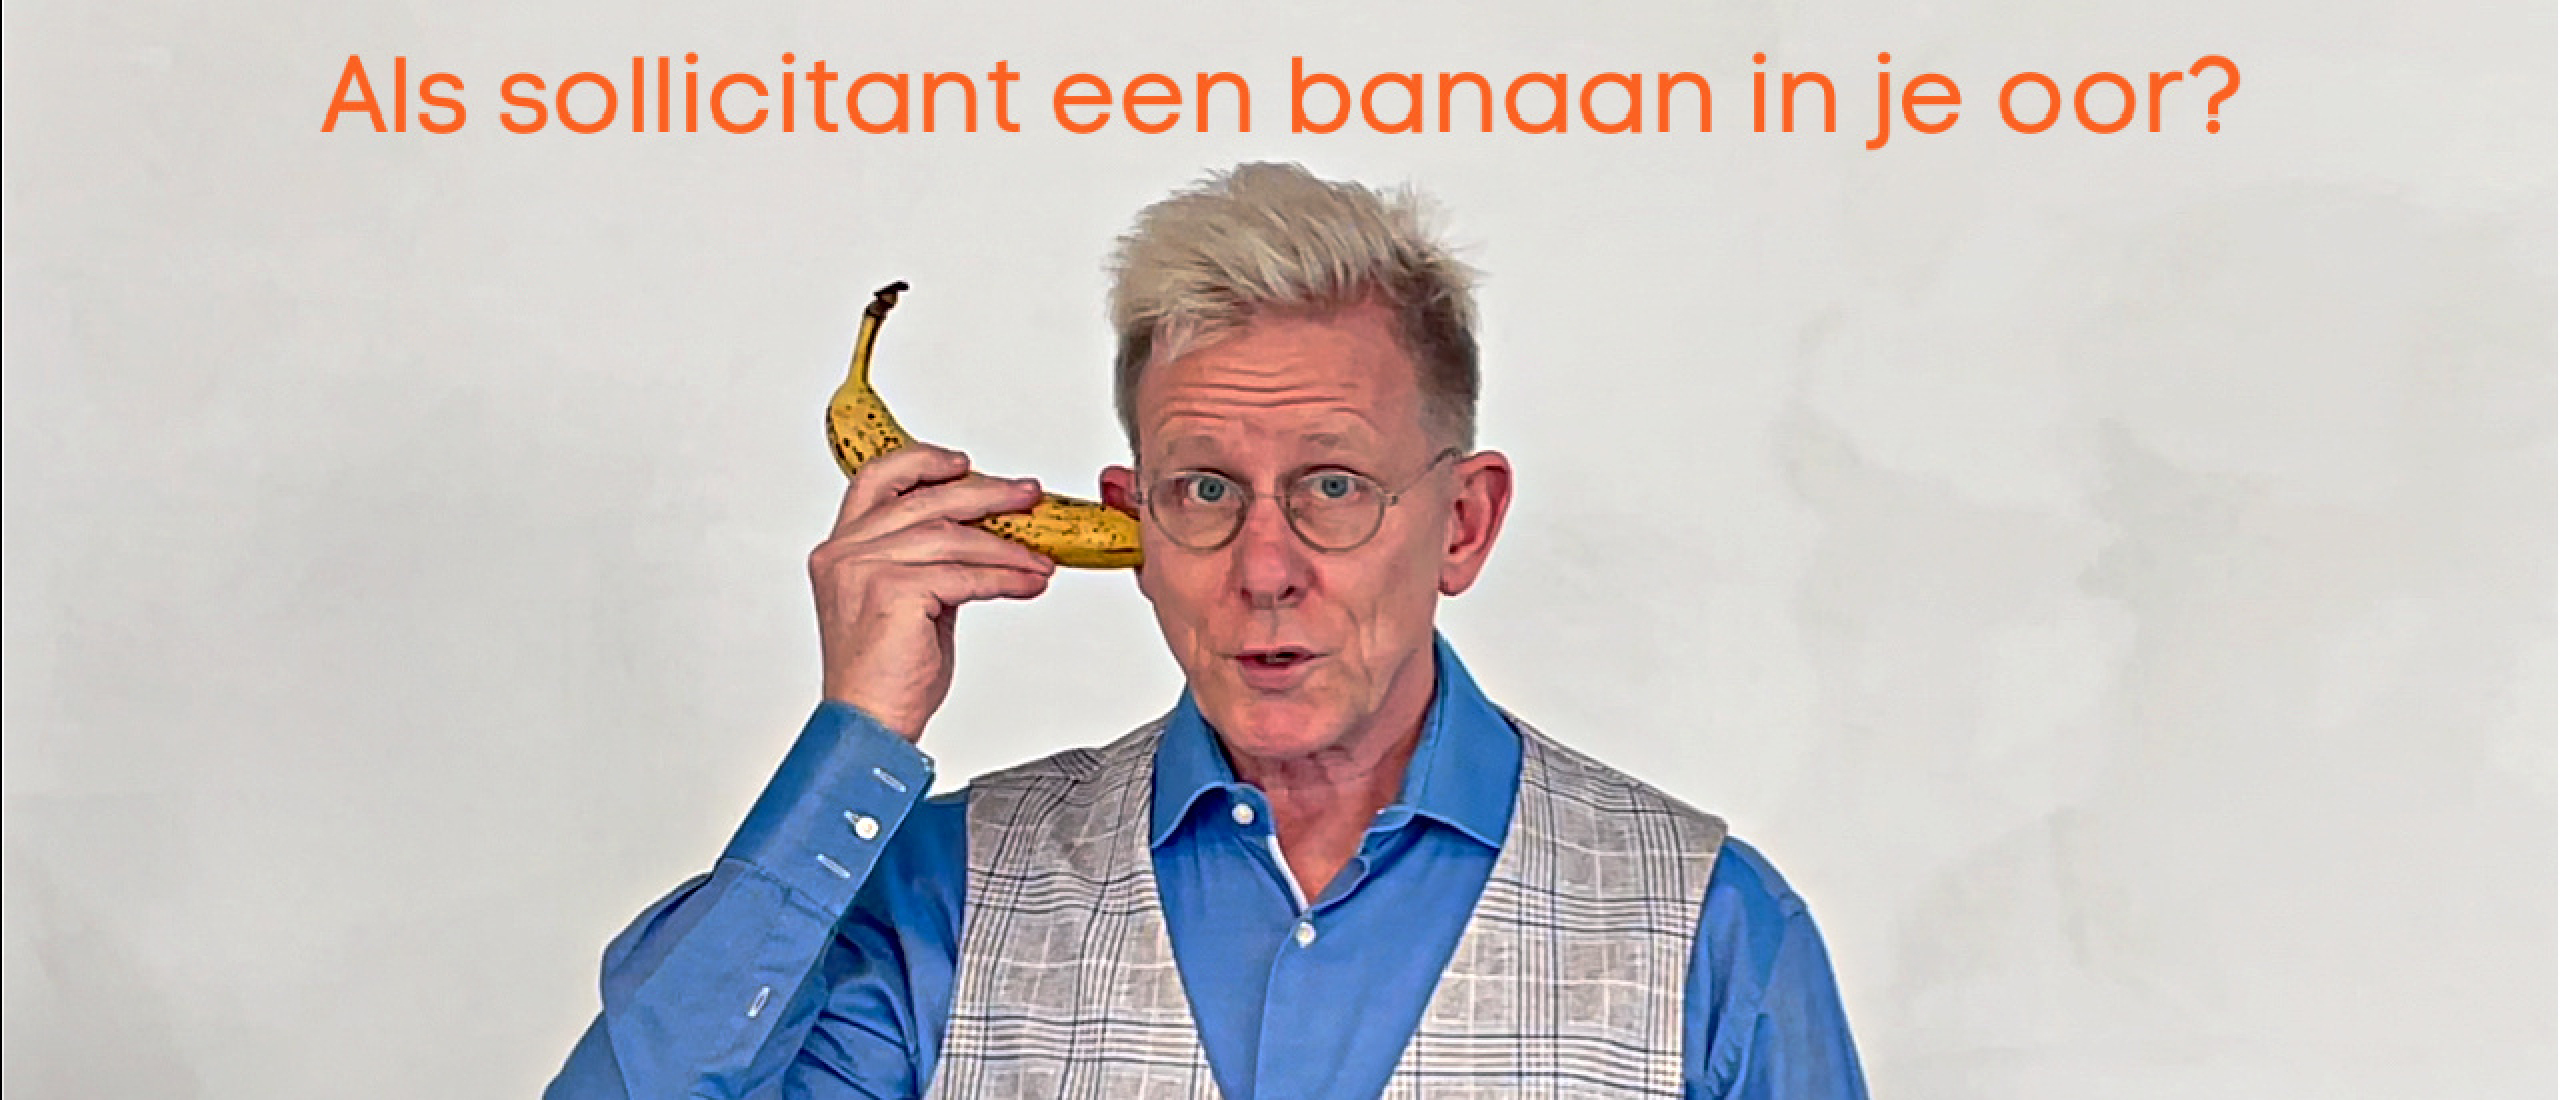 Heb jij als sollicitant een banaan in je oor?